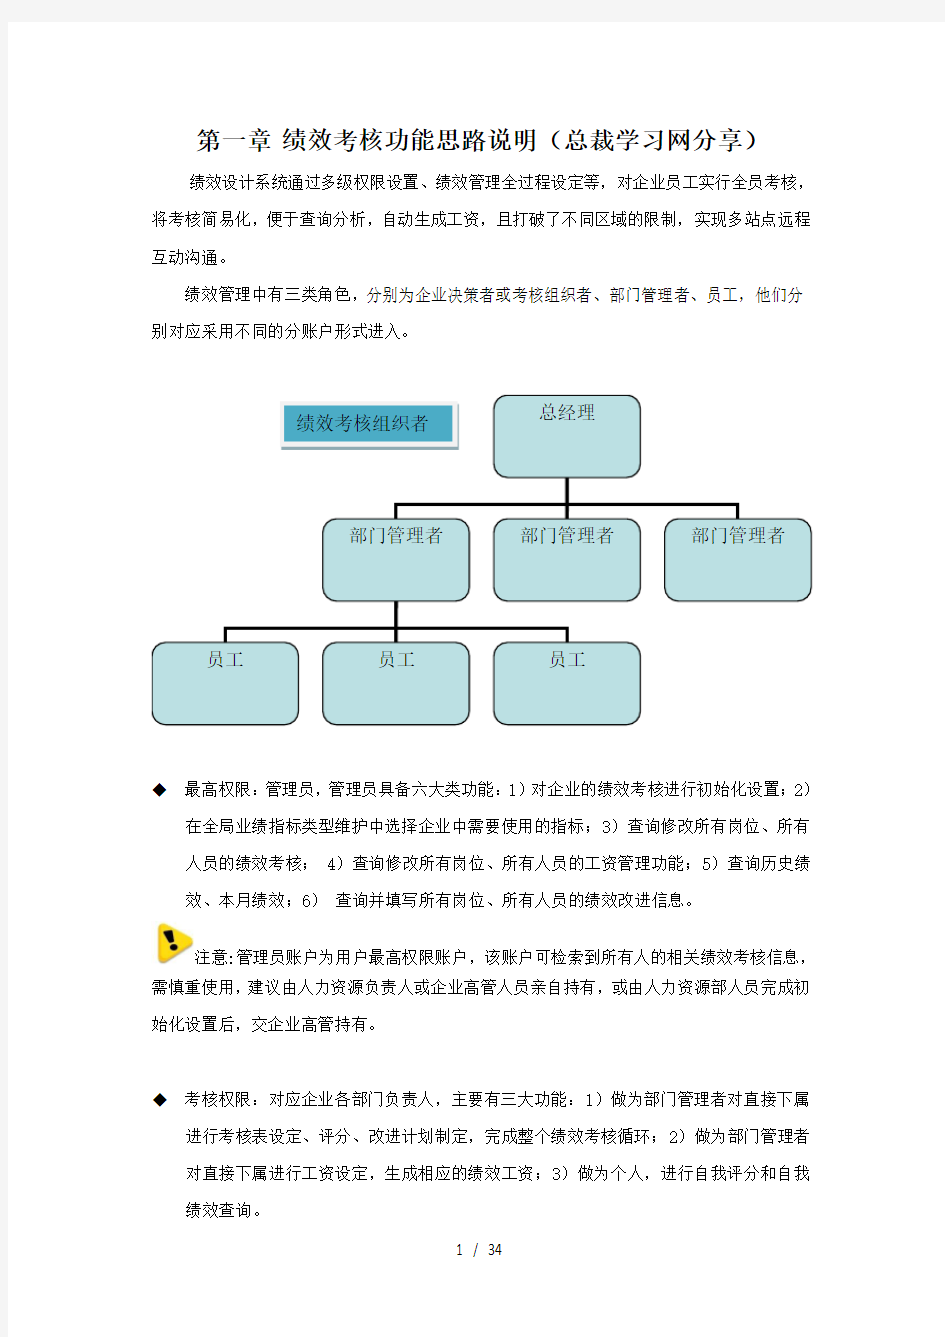 长松咨询绩效考核手册(DOC 34页)